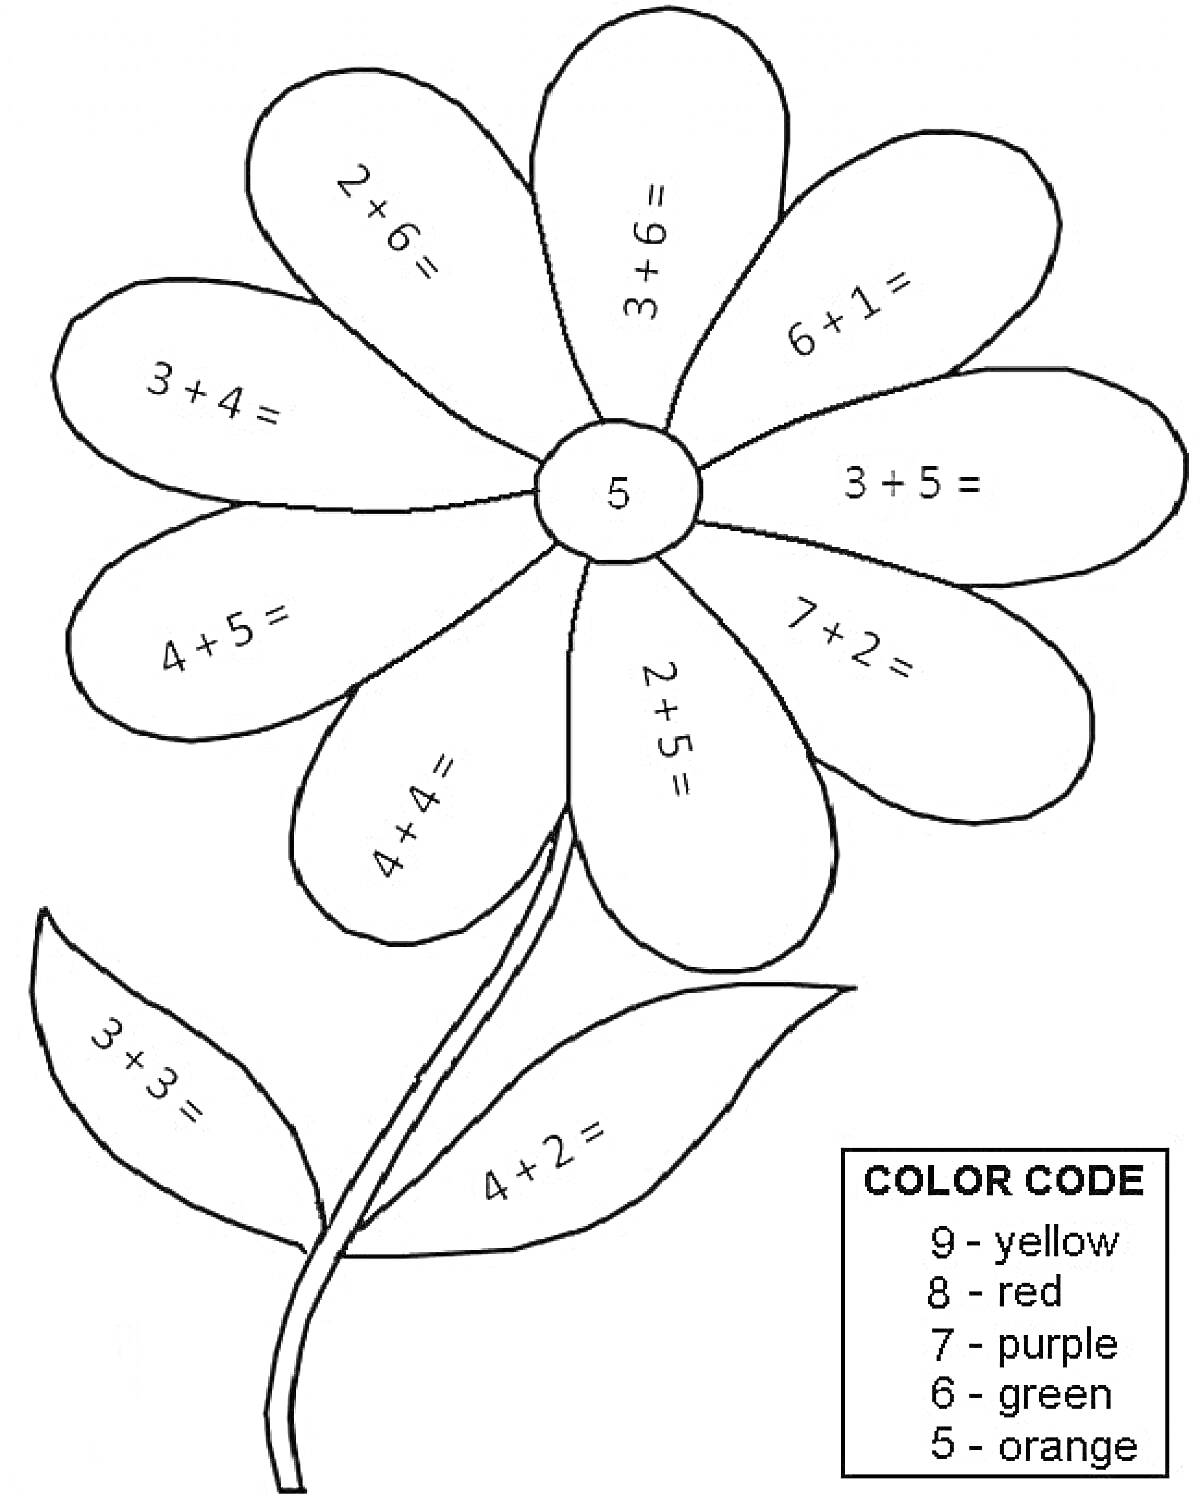 Раскраска с цветком и математическими примерами на лепестках